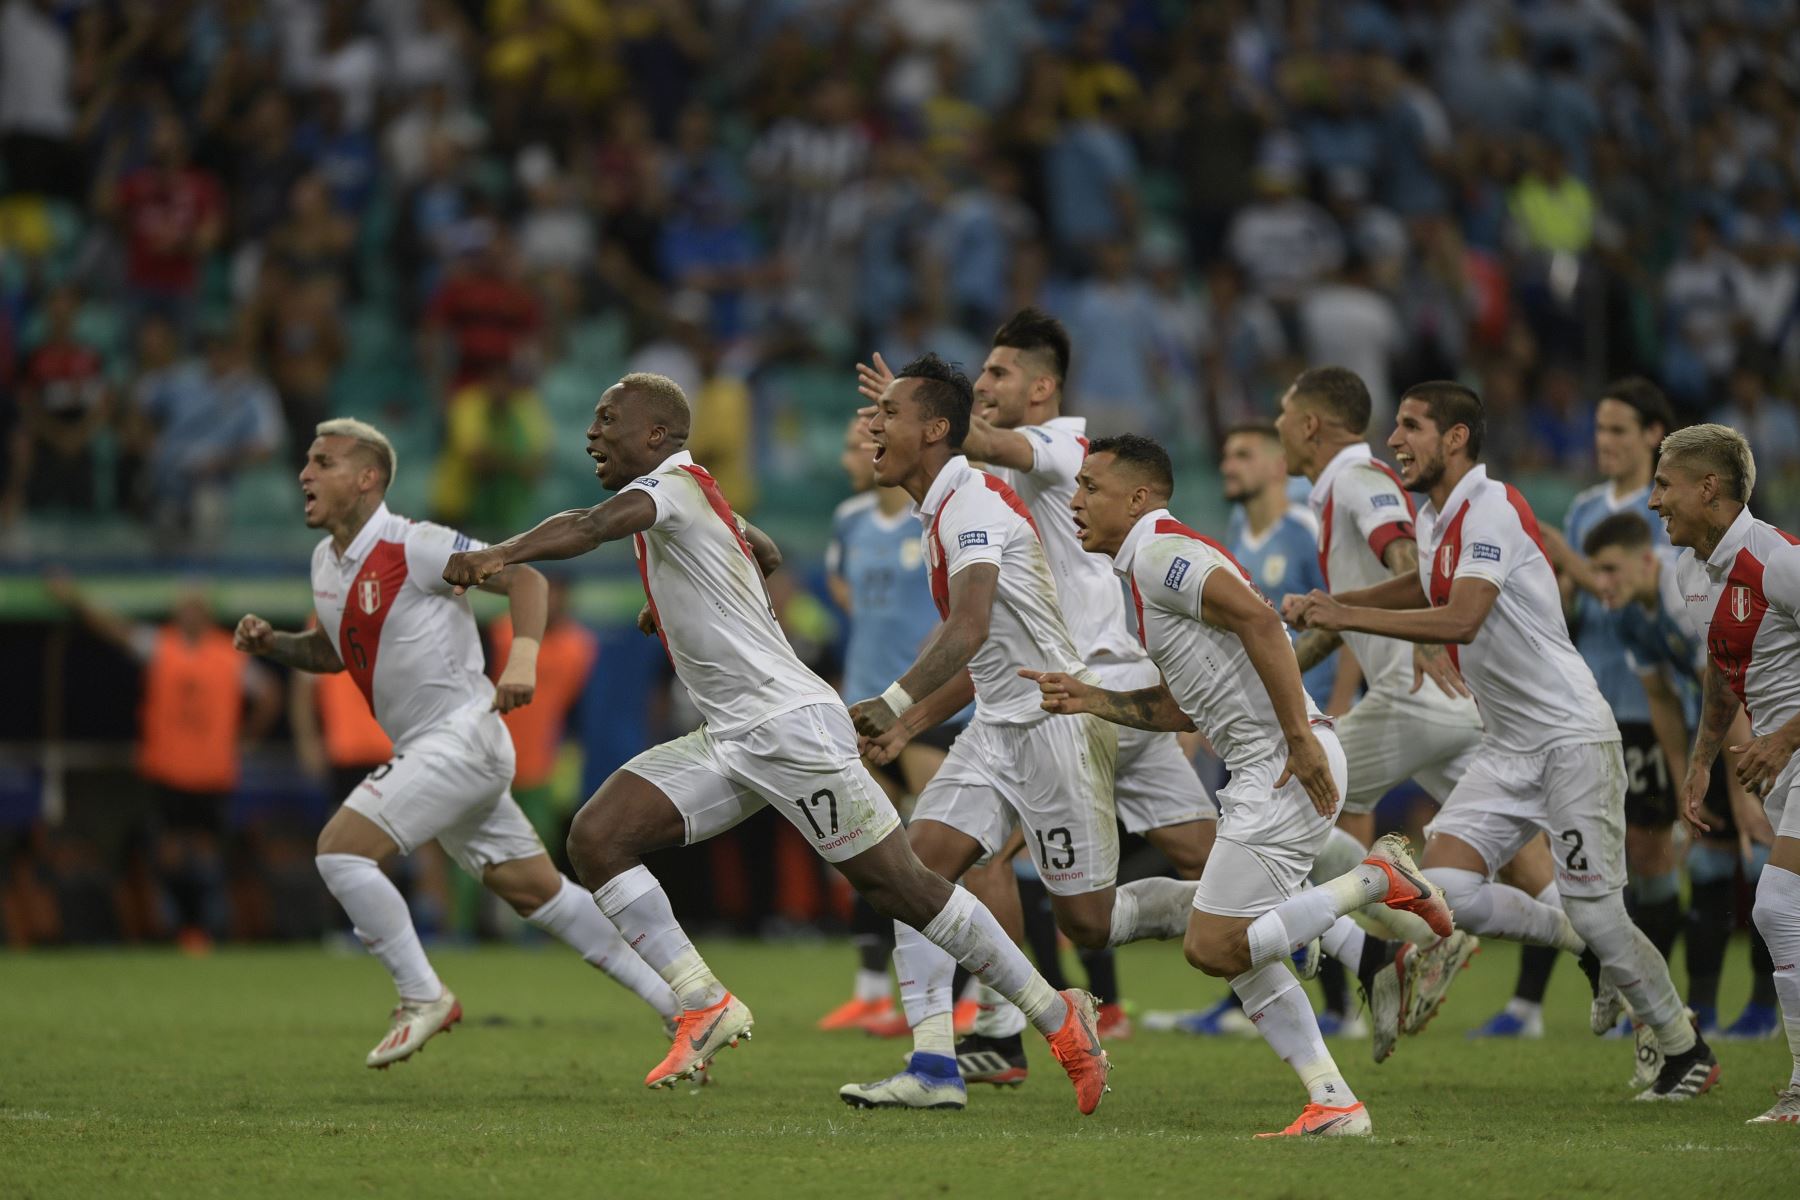 Los jugadores de Perú celebran después de derrotar a Uruguay en el tiroteo de penalización luego de empatar 0-0 durante su partido de cuartos de final del torneo de fútbol de la Copa América en el Fonte Nova Arena en Salvador, Brasil, el 29 de junio de 2019.
Foto: AFP